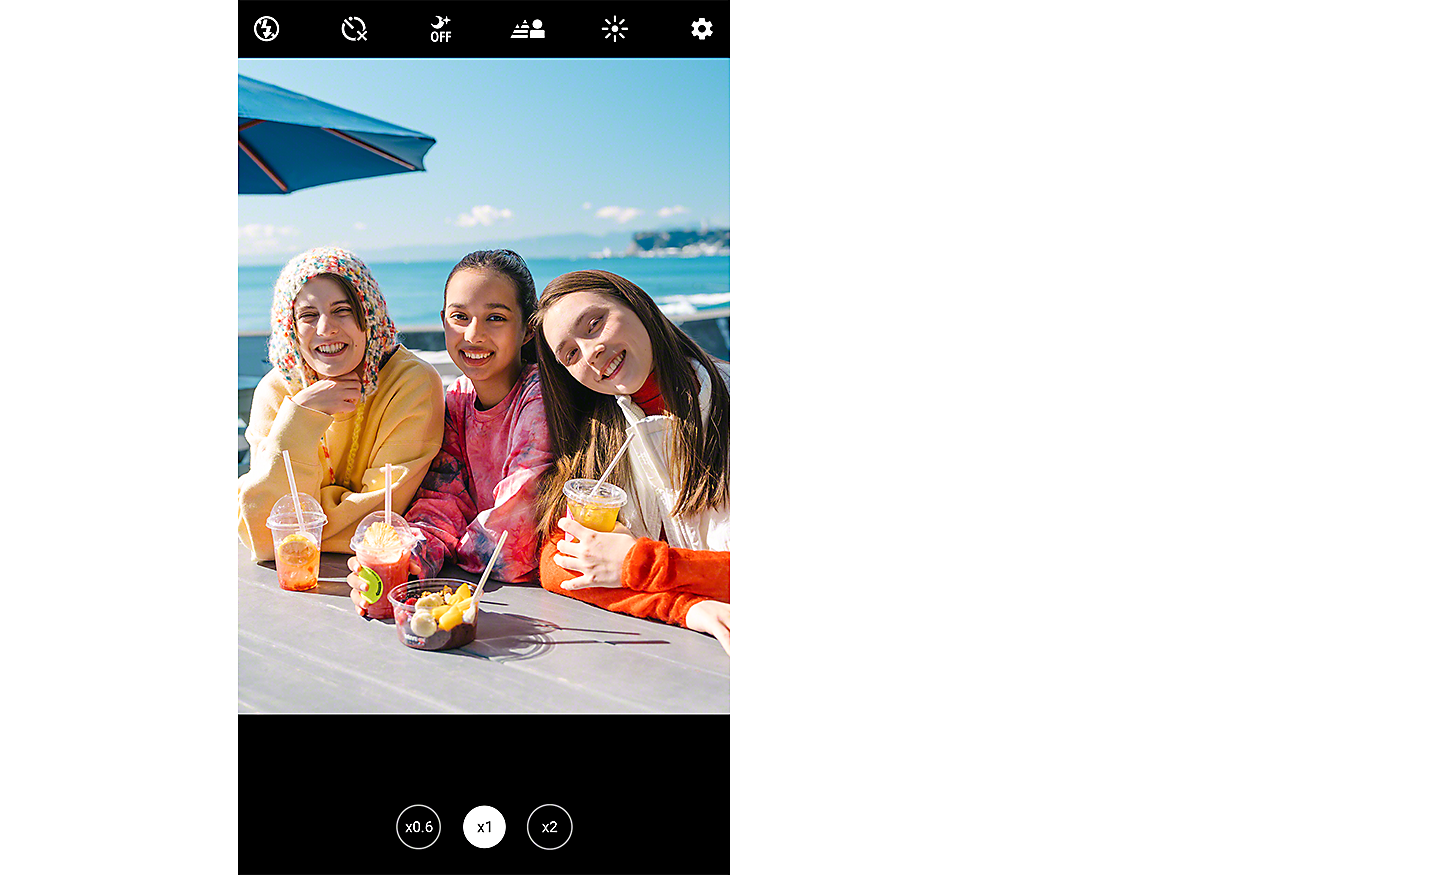 Skærmbillede af et billede af tre unge kvinder, der smiler til kameraet, siddende ved et bord med udsigt over havet